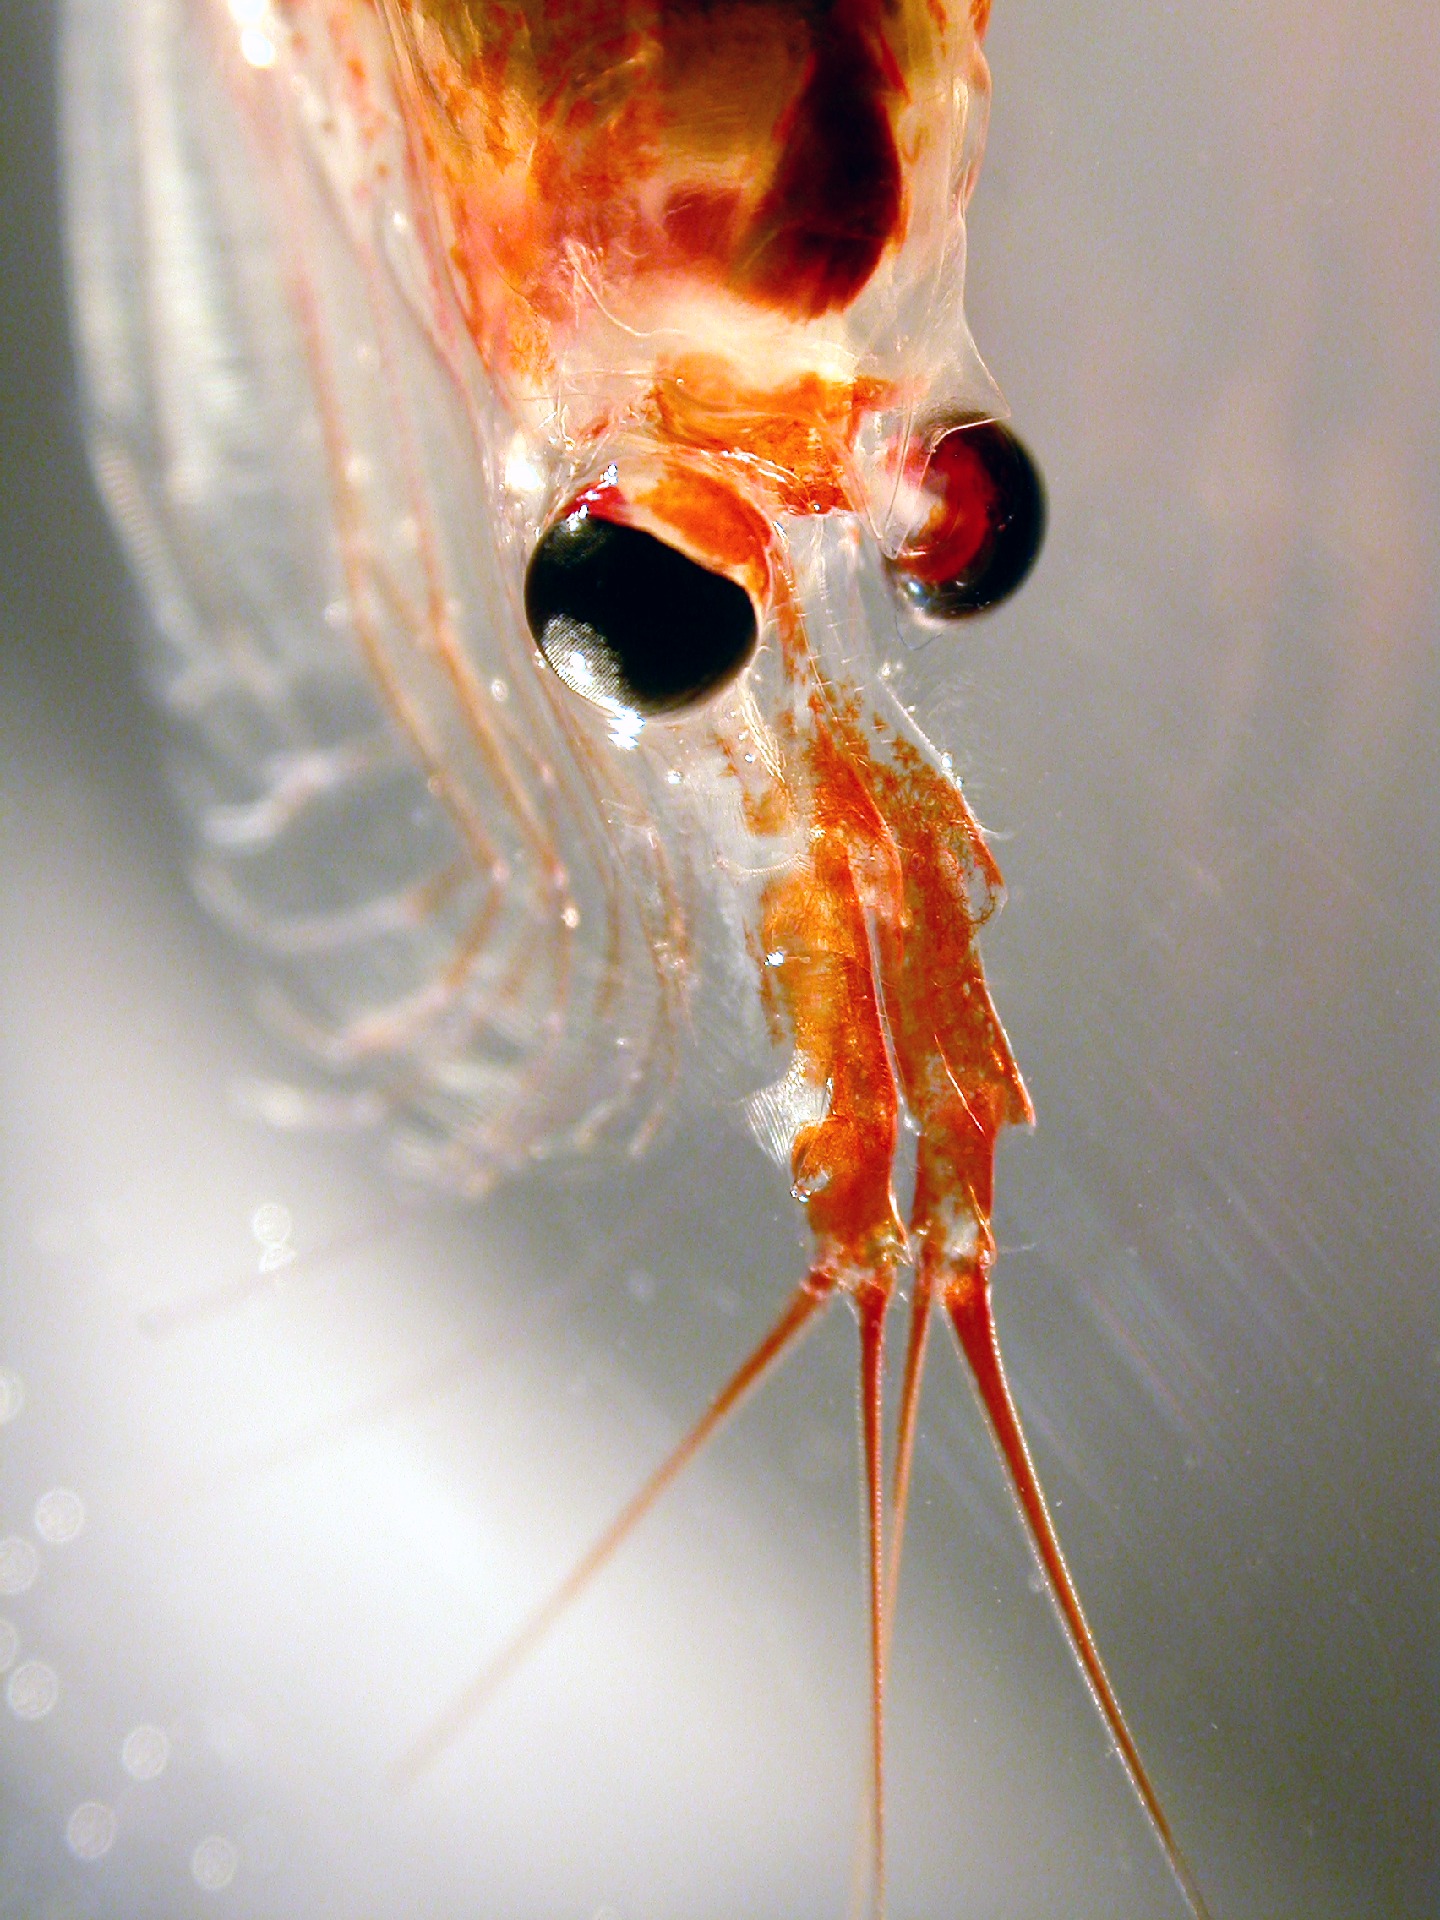 A close up of krill, a small transparent shrimp like creature.